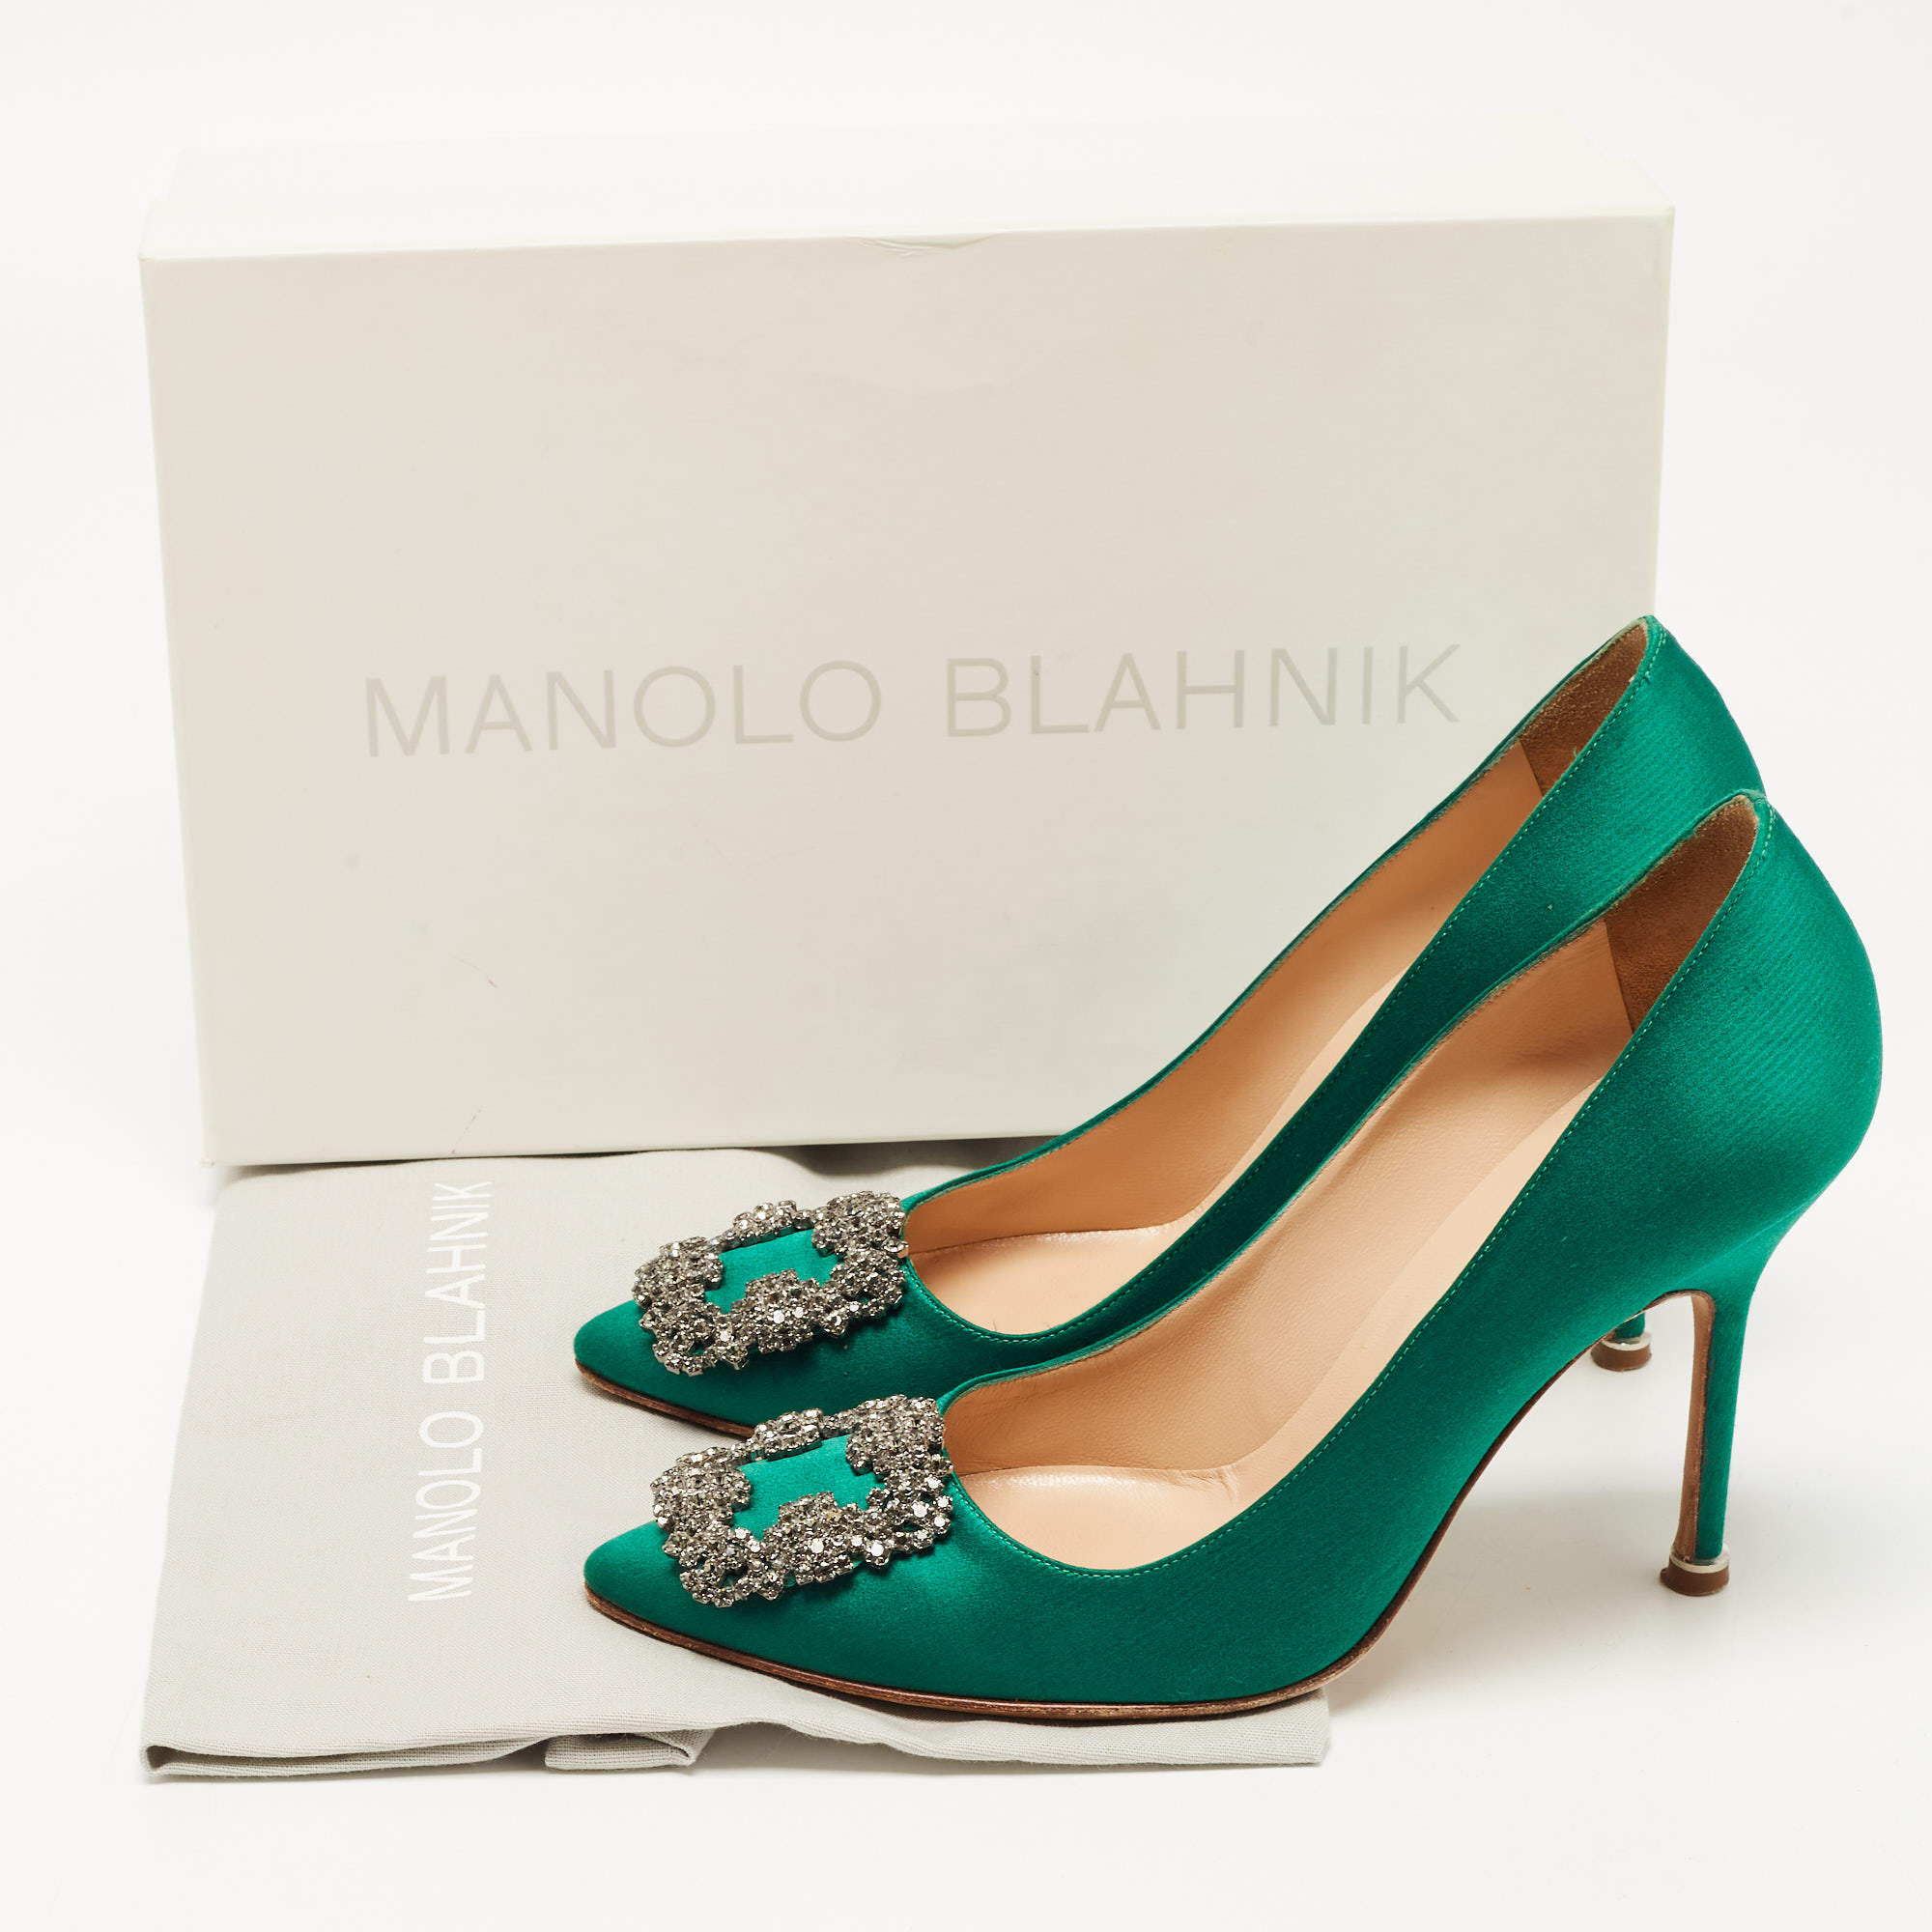 Spot fake Manolo Blahnik Hangisi shoes